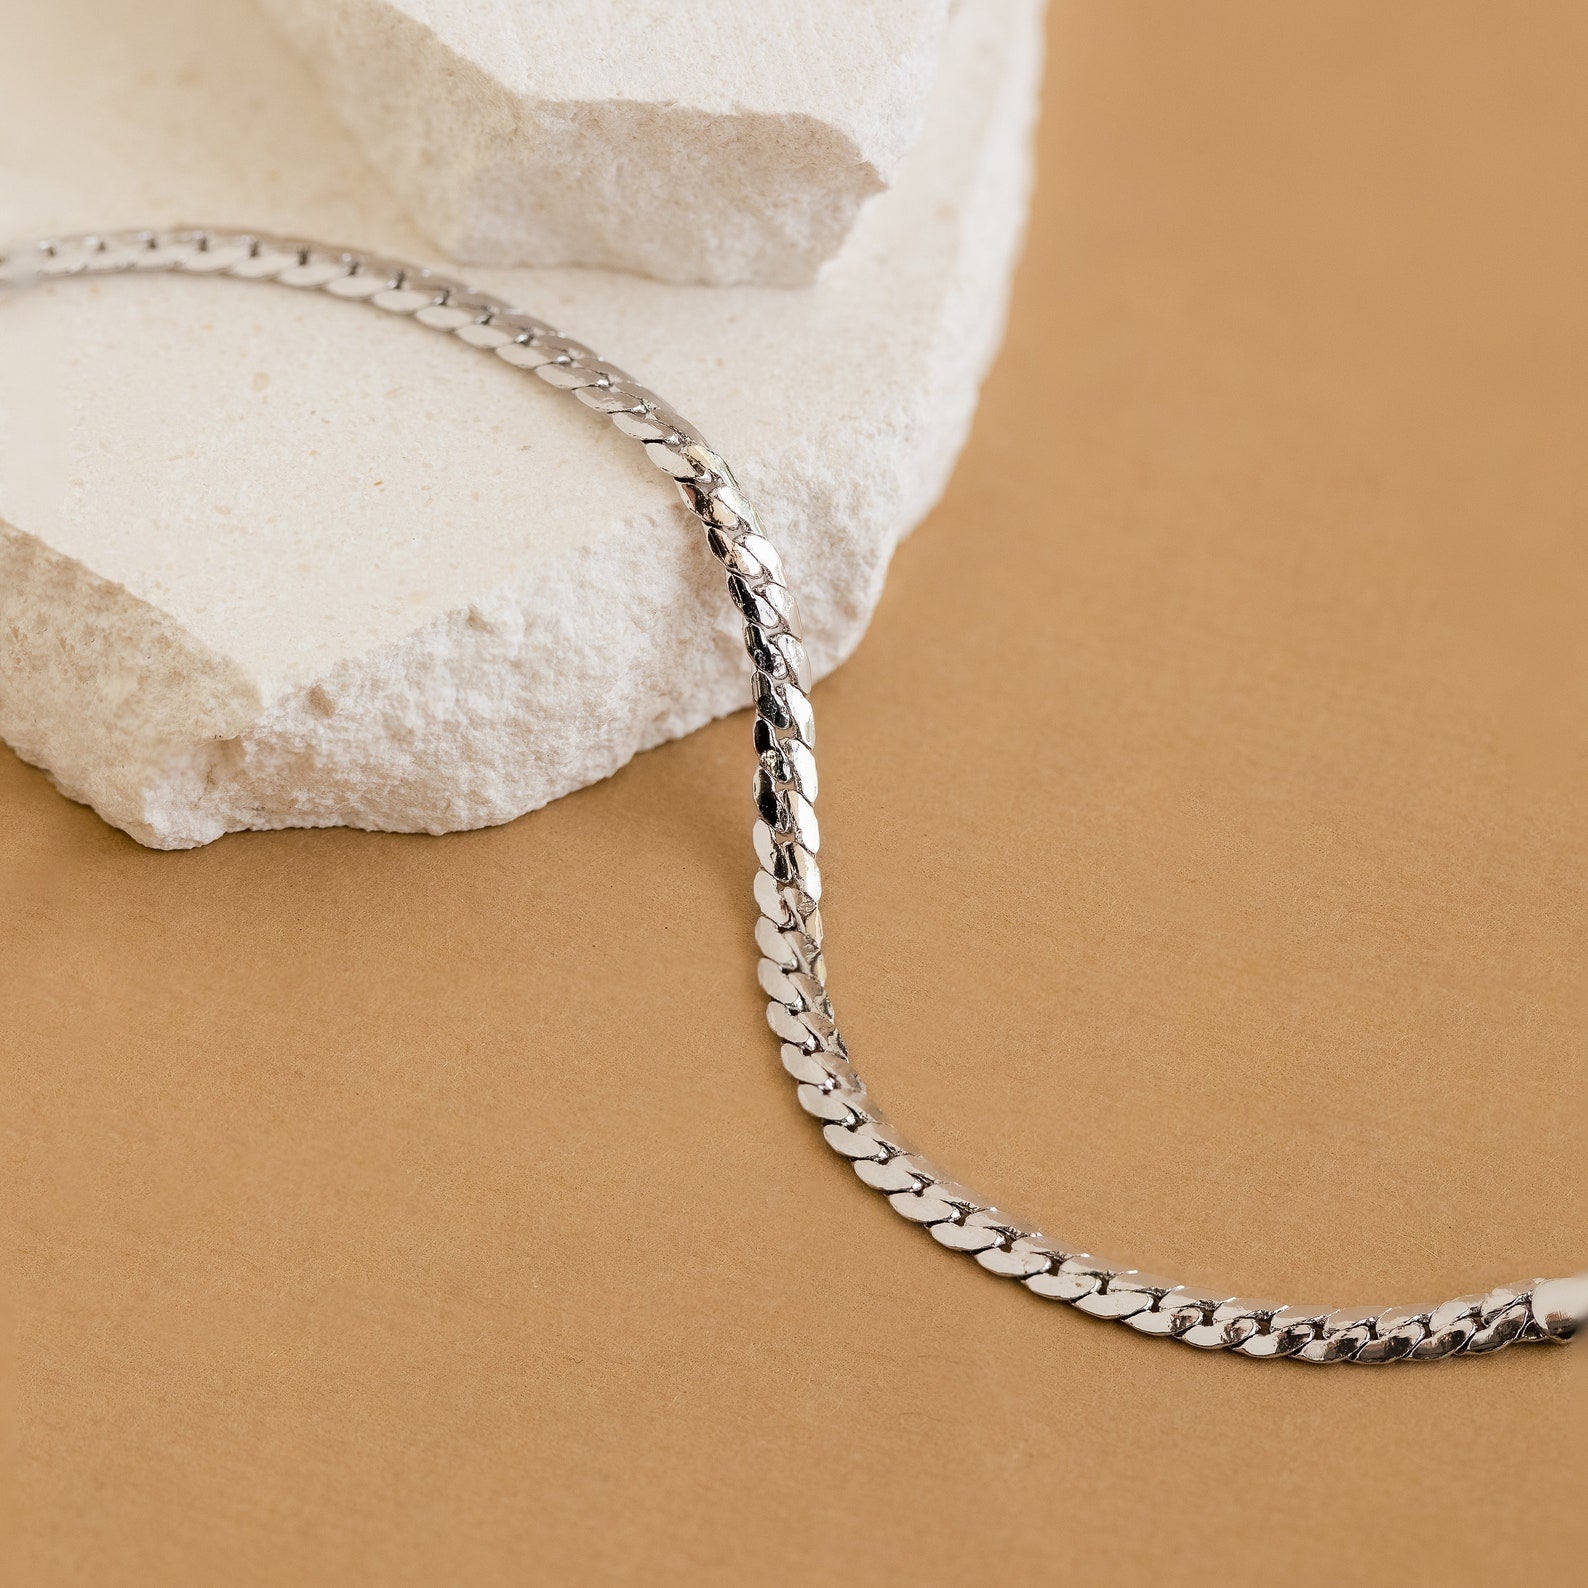 Snake Bracelet for Women - Dainty Gold Snake Bracelet - Minimalist Silver Snake Bracelet - Snake Jewelry - Animal Bracelet - Charm Bracelet